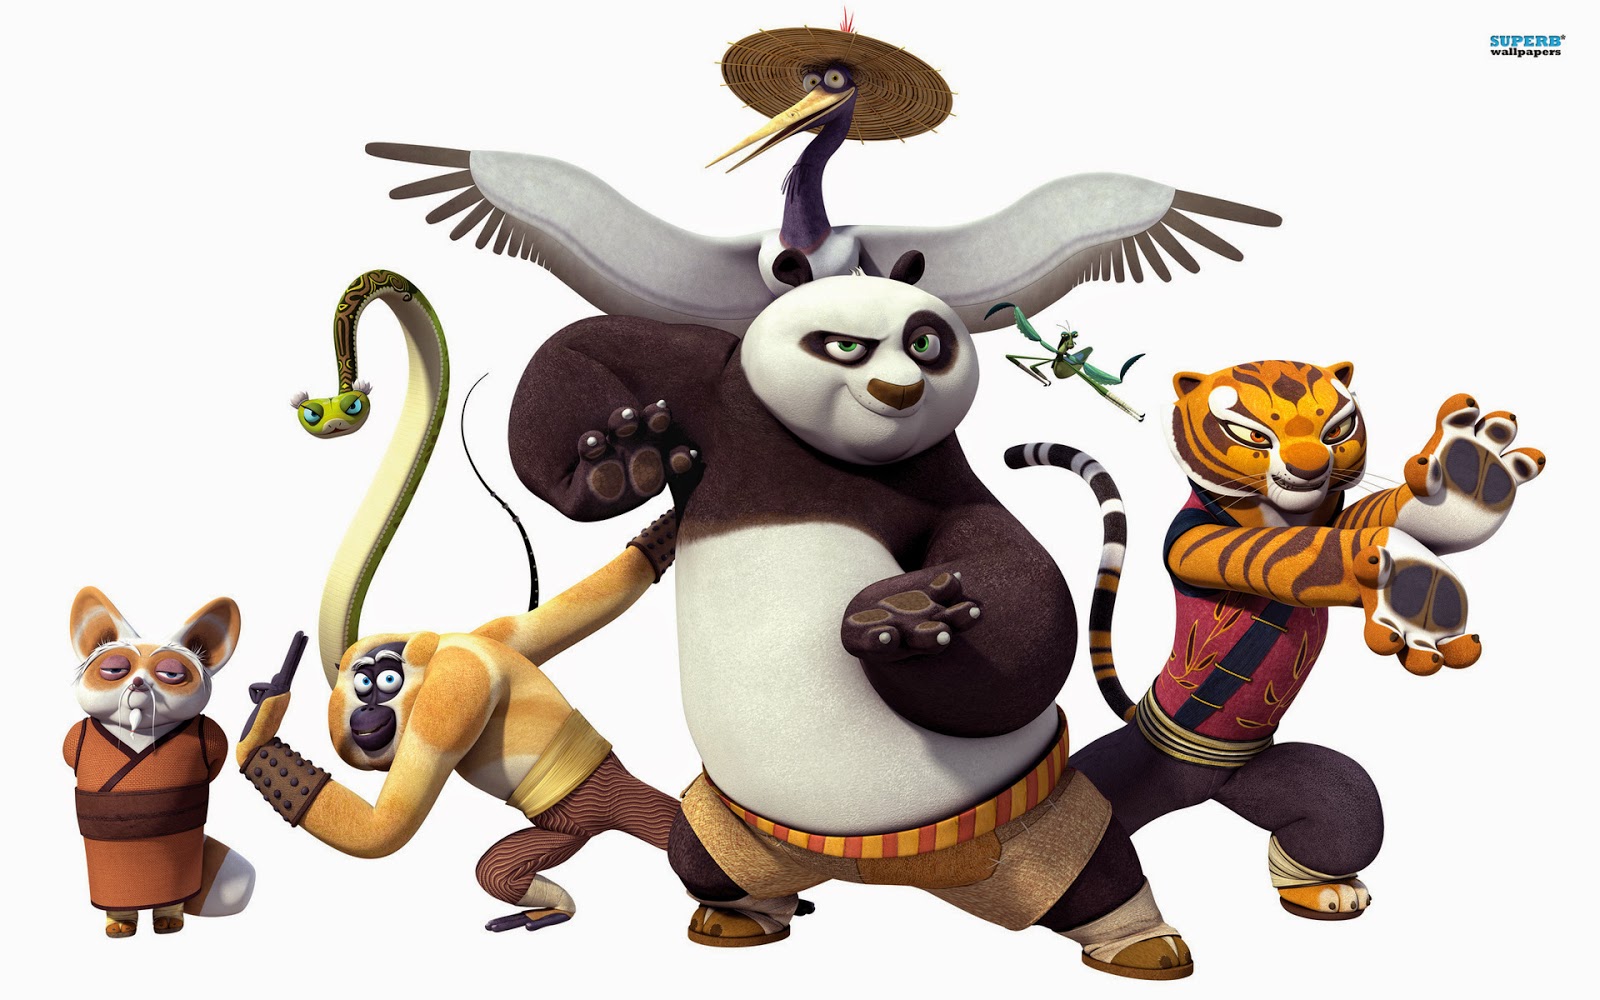 Kumpulan Gambar Kungfu Panda | Gambar Lucu Terbaru Cartoon Animation